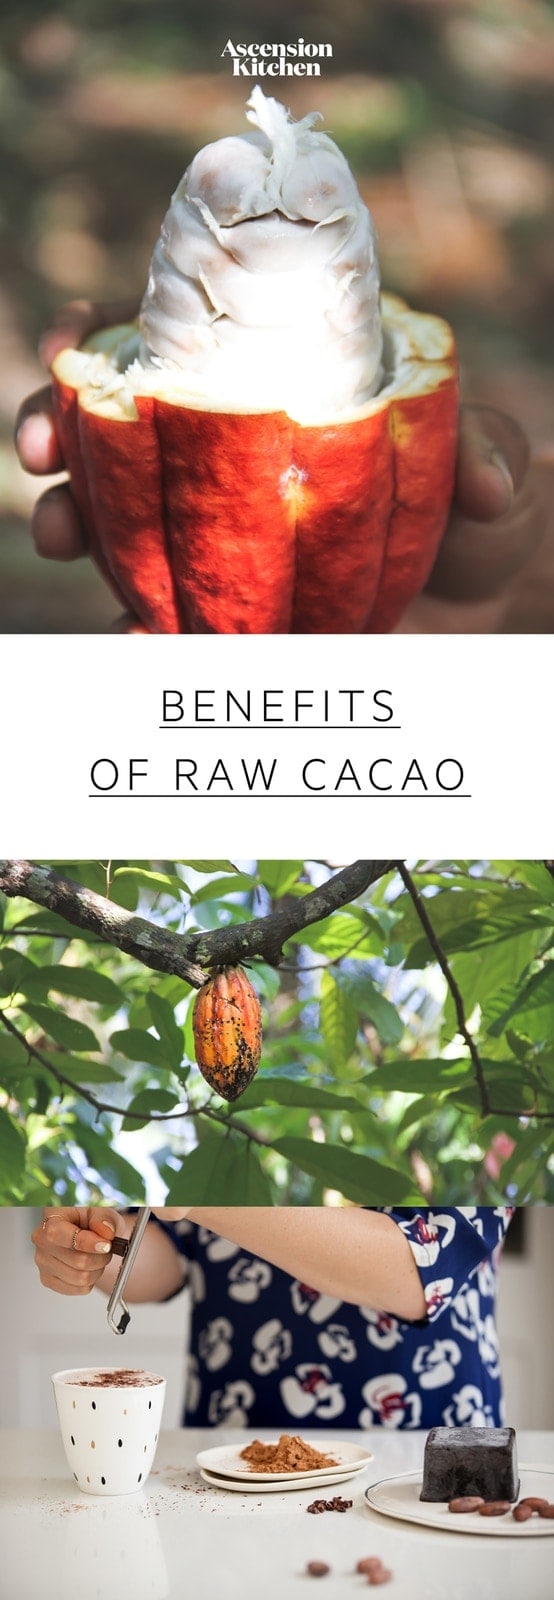 Nutrition gezondheidsvoordelen van Cacao: ontdek hoe rauwe cacao verschilt van cacao waarom cacao zo gunstig is. #benefitscacao #cacaobenefits #cacaonutrition #cacaopowderbenefits #rawcacaopowder #cacaopowderrecipes #superfoods #AscensionKitchen